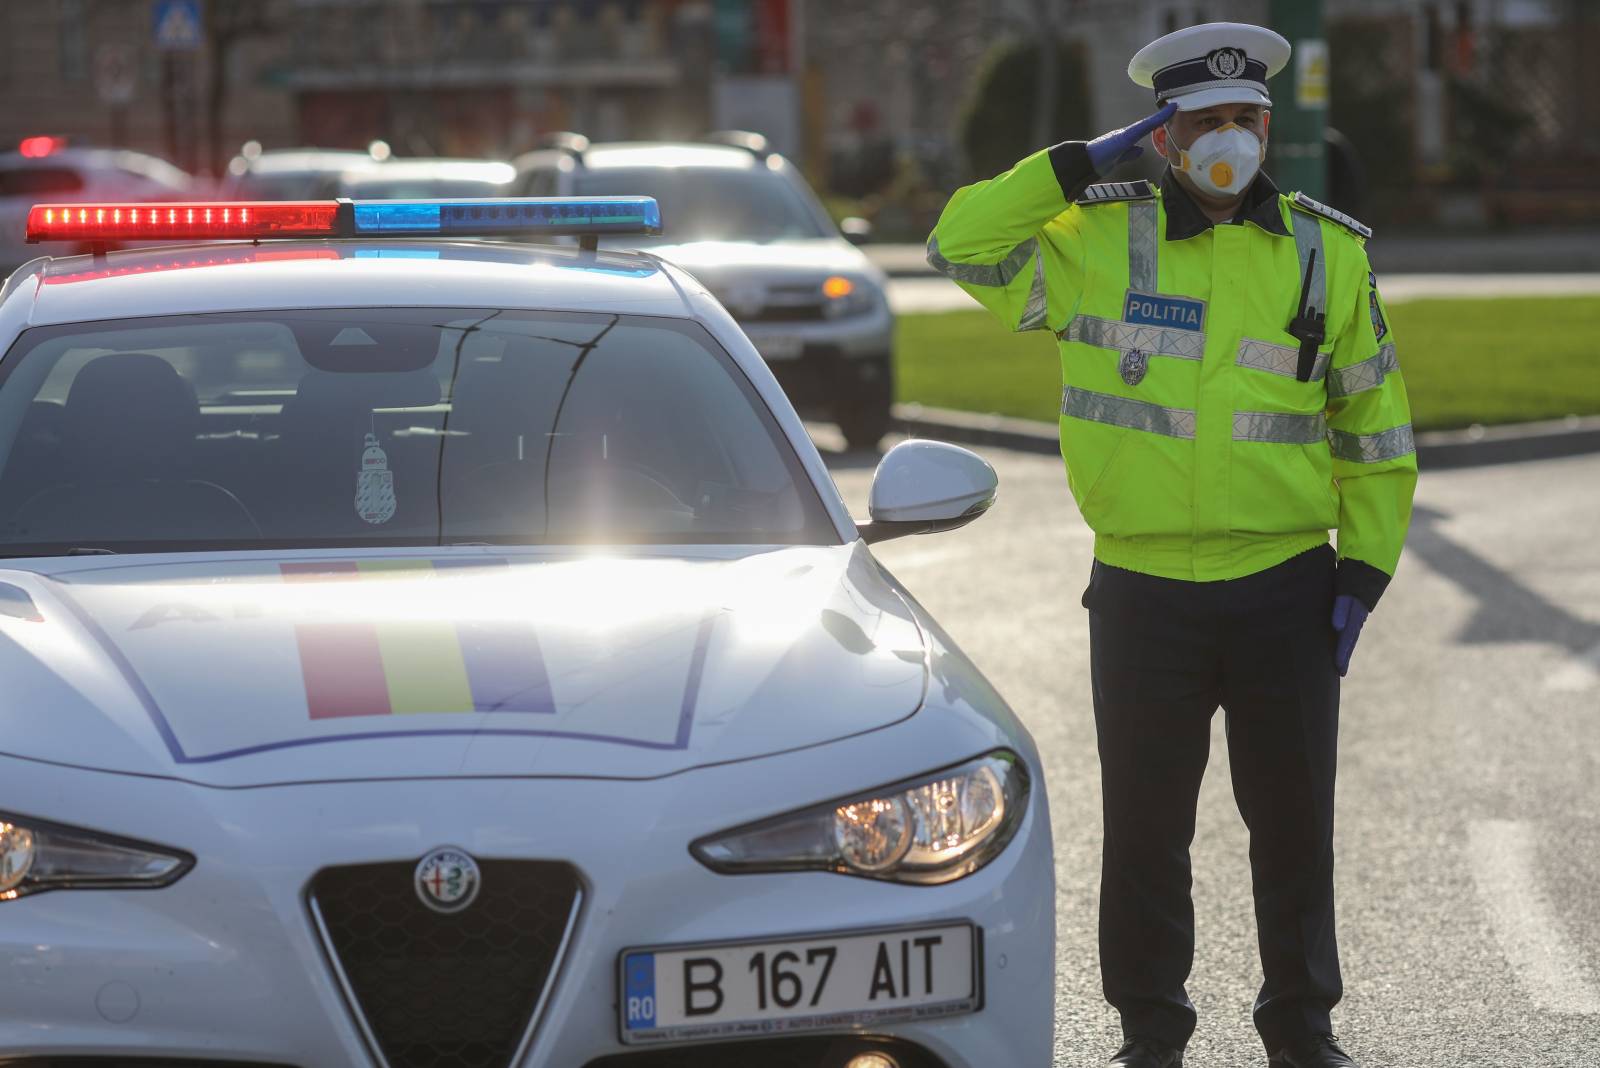 Abstandhalten der rumänischen Polizei